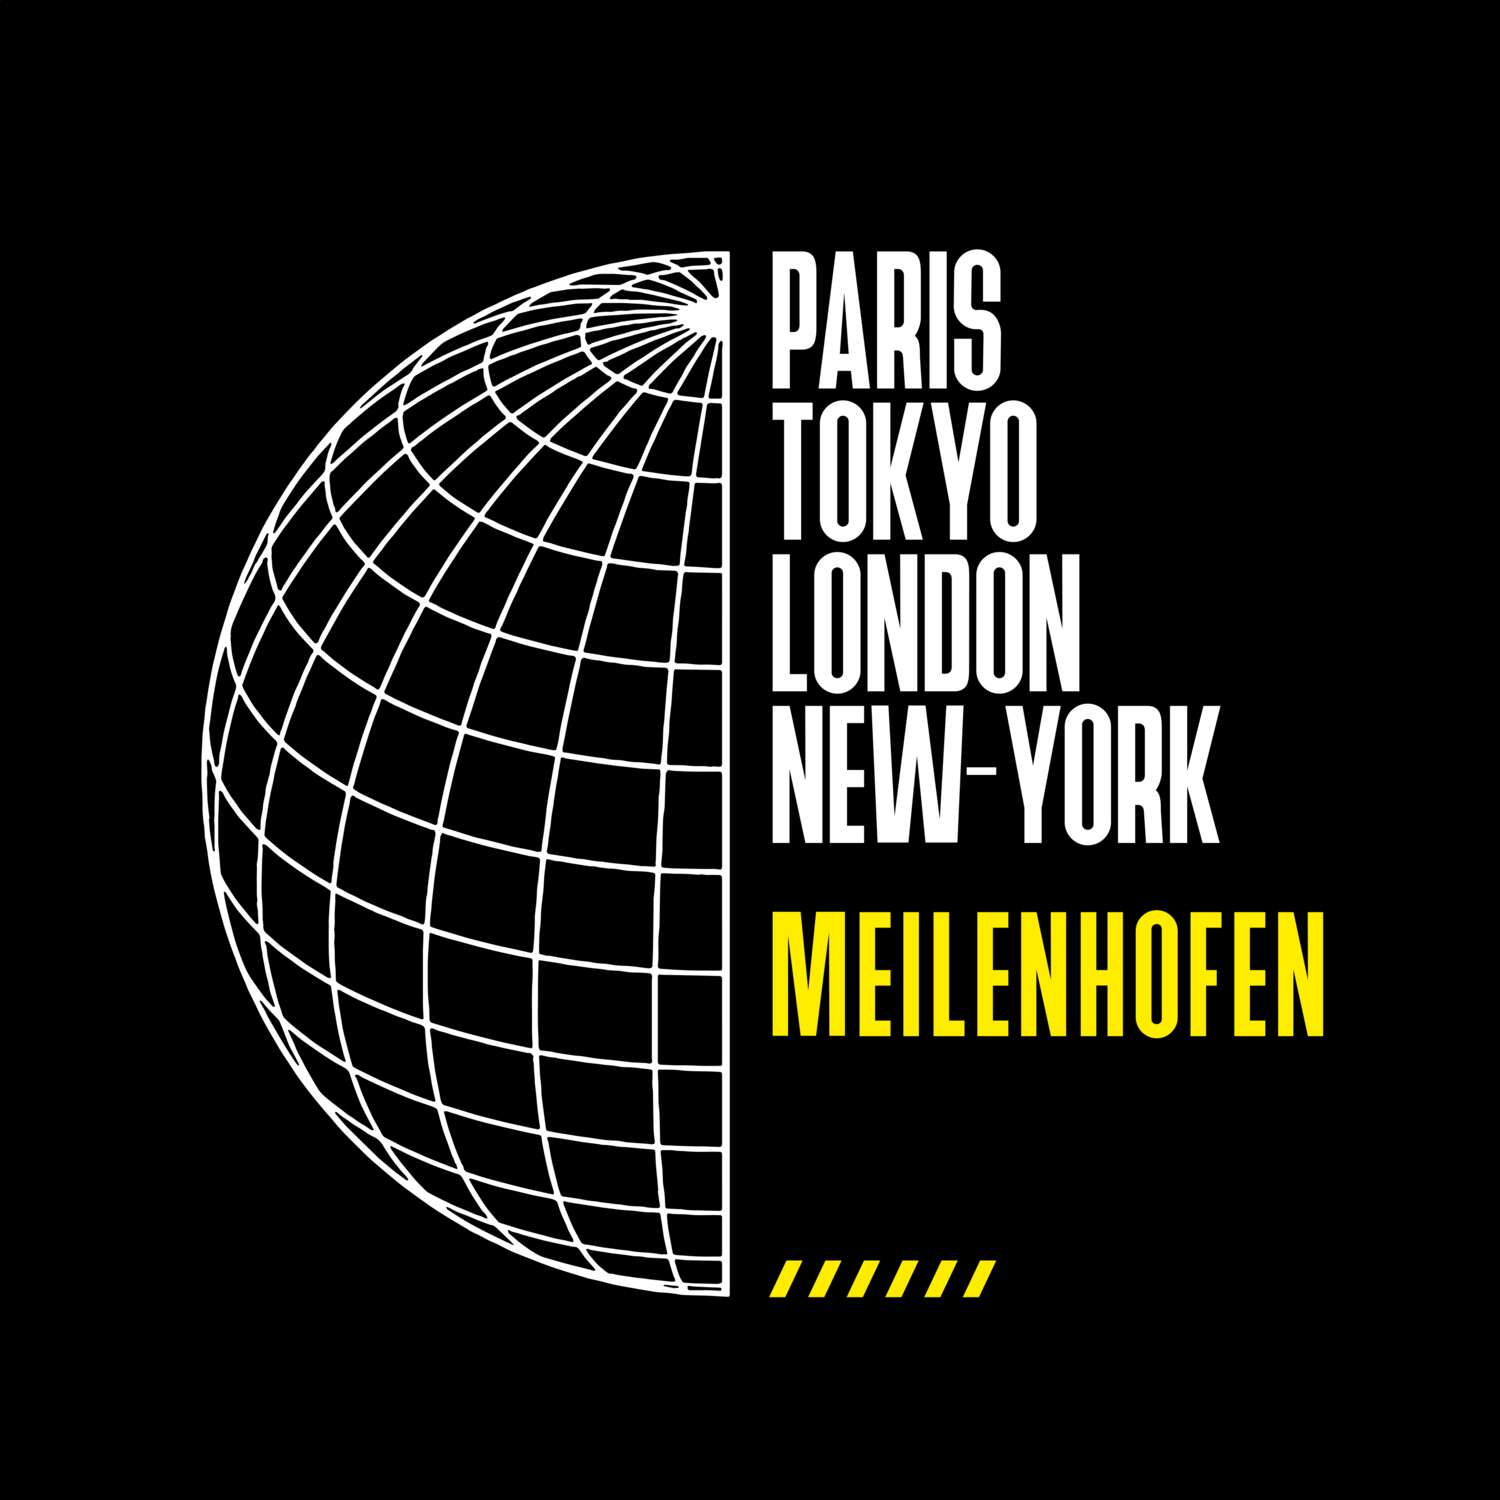 Meilenhofen T-Shirt »Paris Tokyo London«